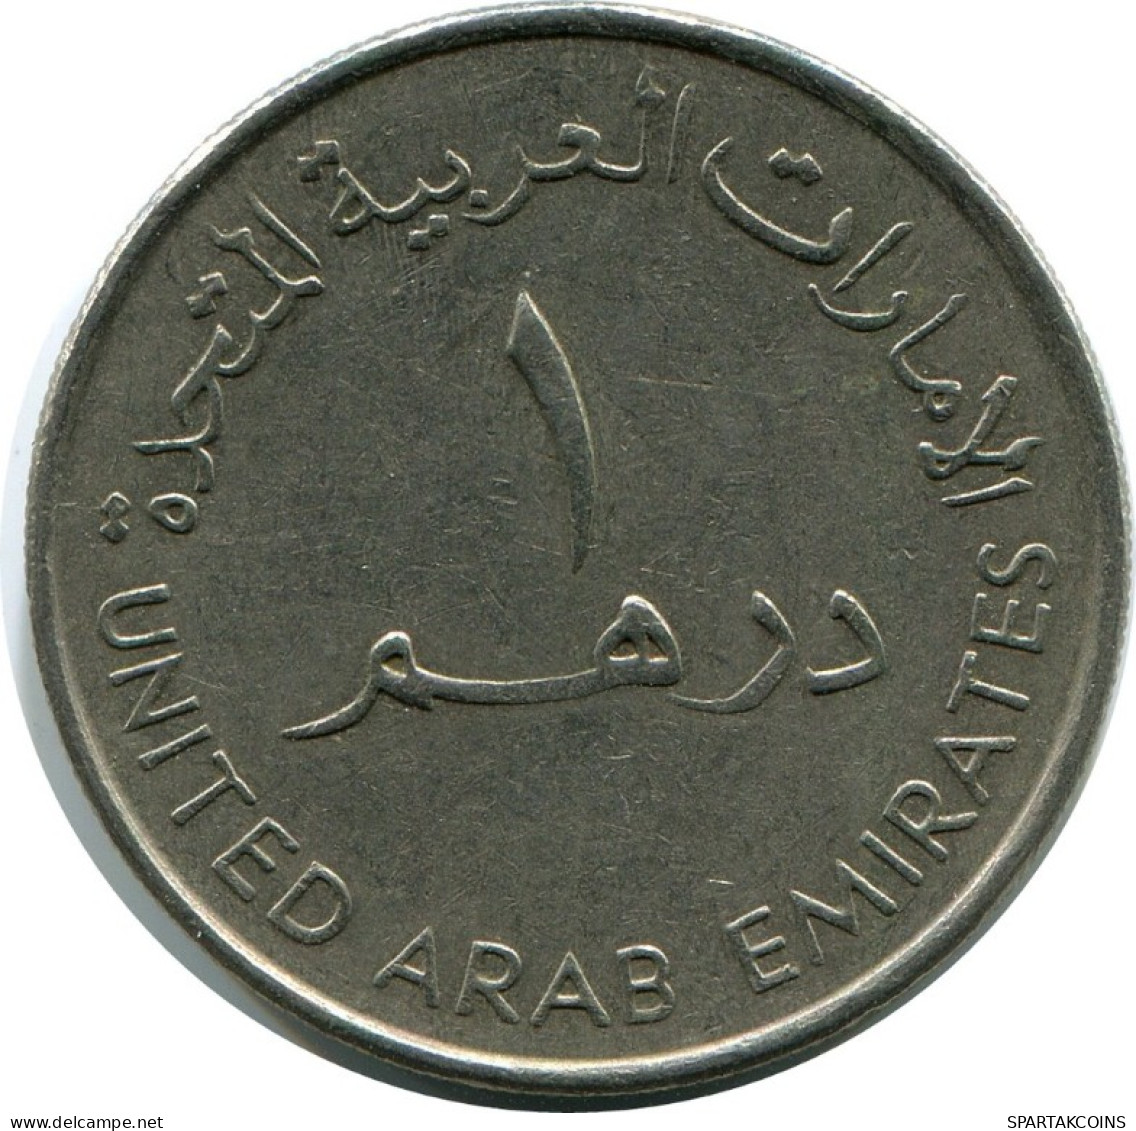 1 DIRHAM 1990 UAE UNITED ARAB EMIRATES Islamic Coin #AH994.U.A - United Arab Emirates